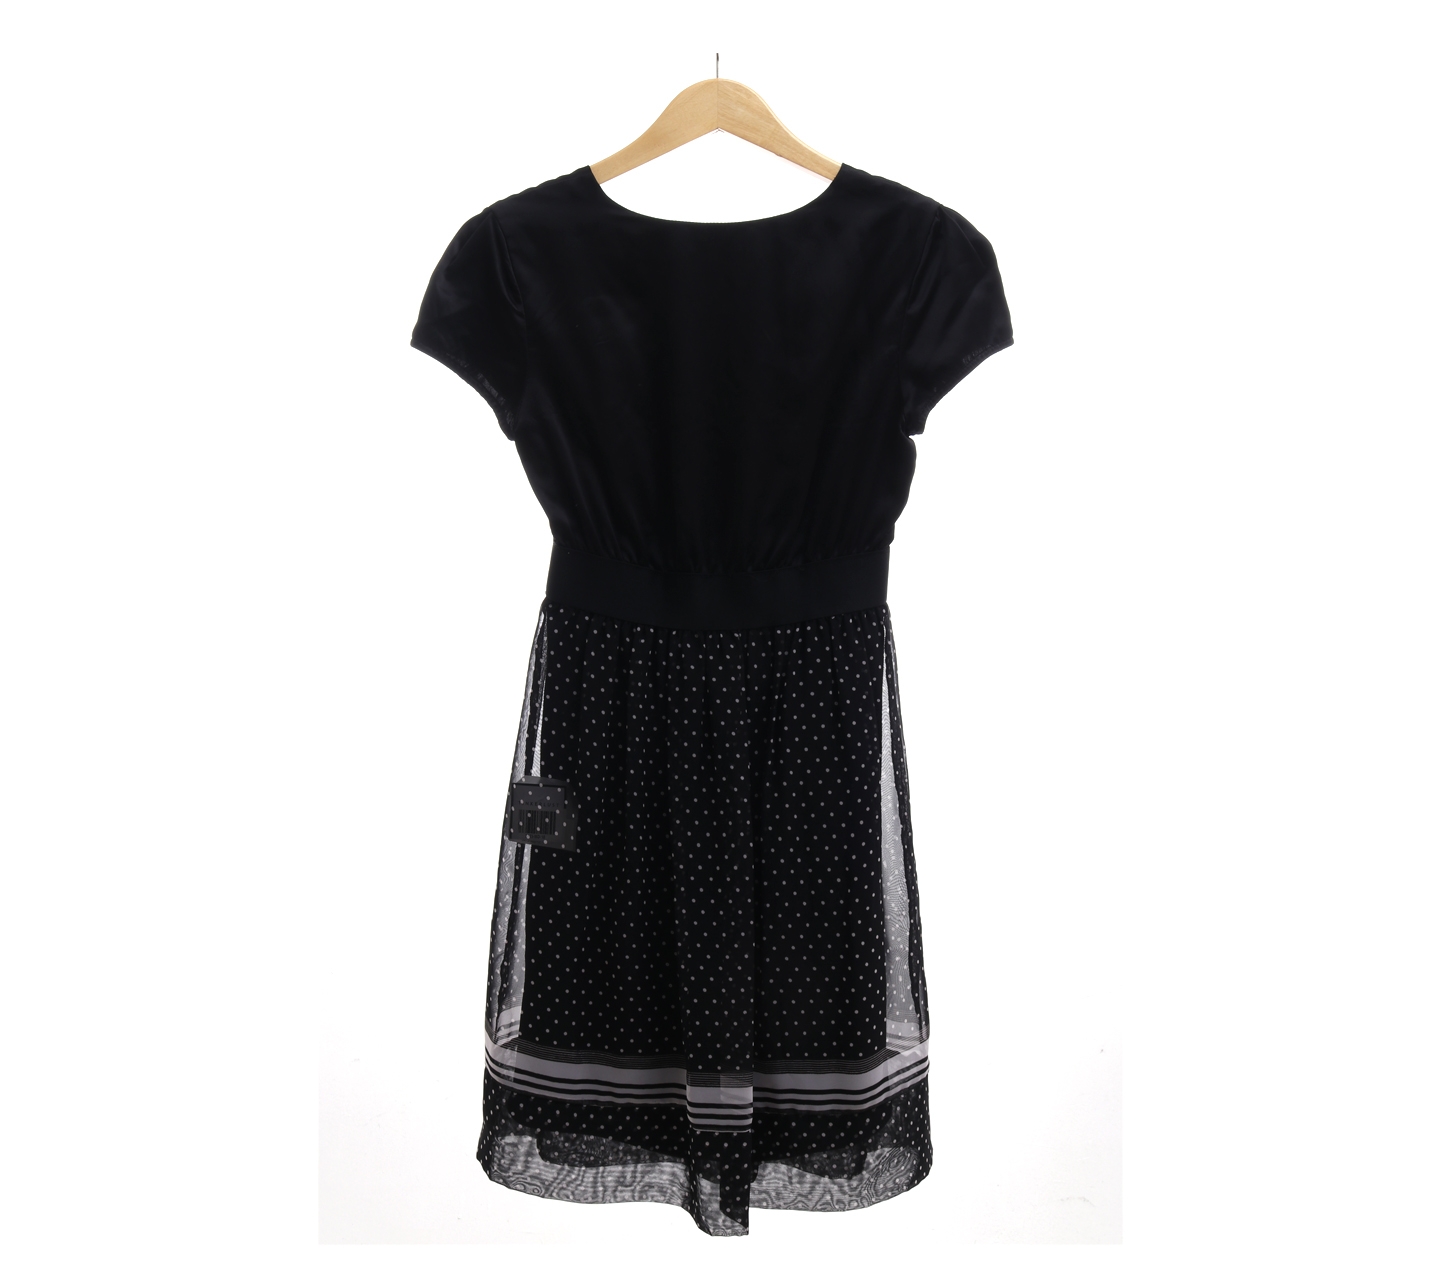 Arithalia Polkadot Black Mini Dress